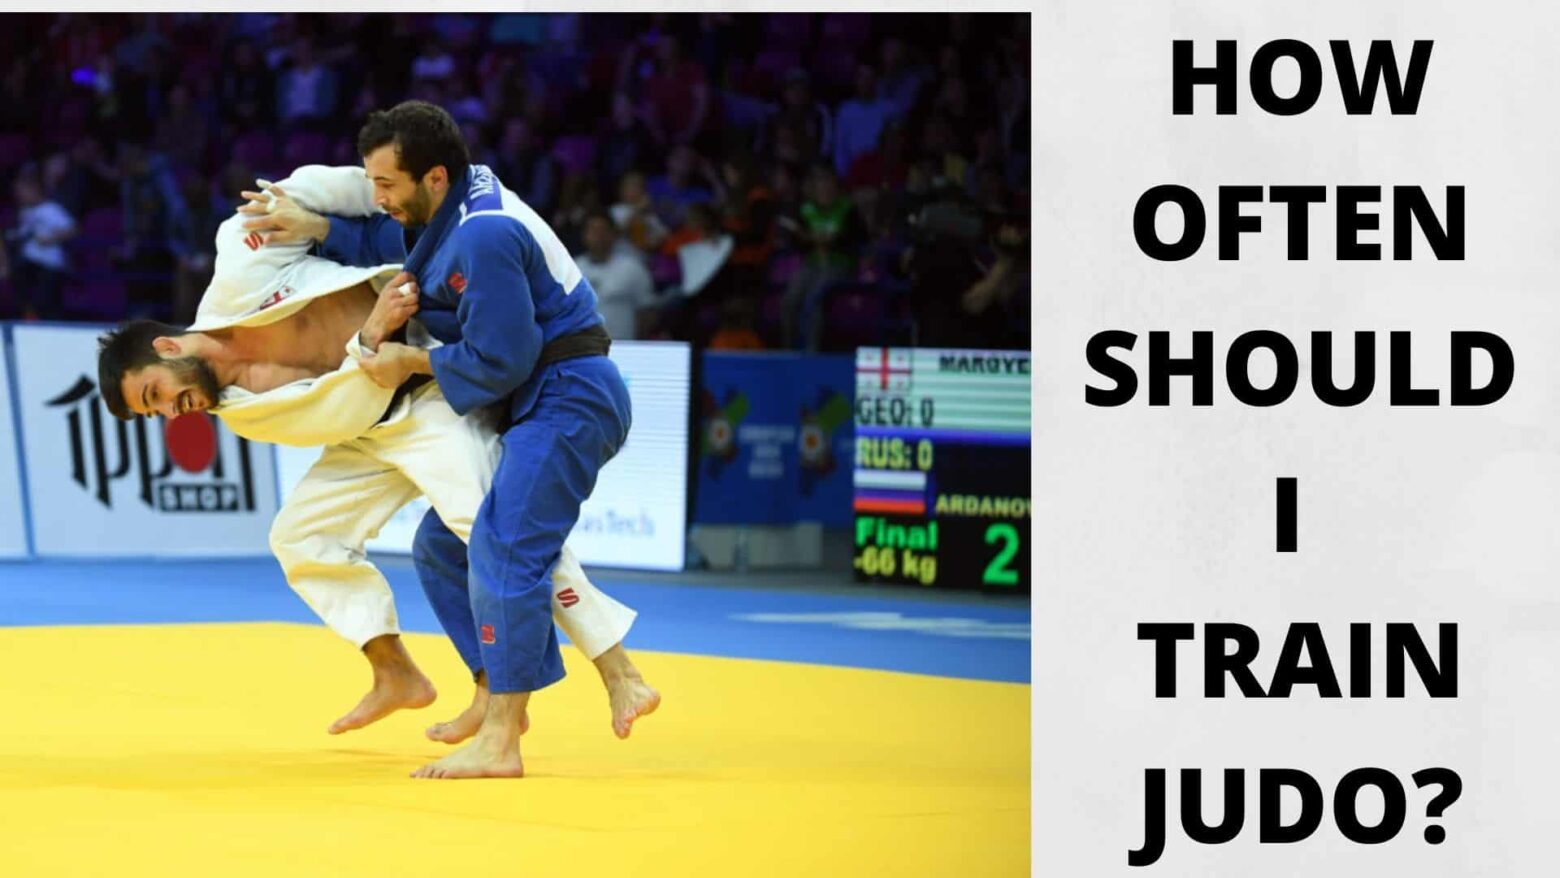 How Often Should I Train Judo?